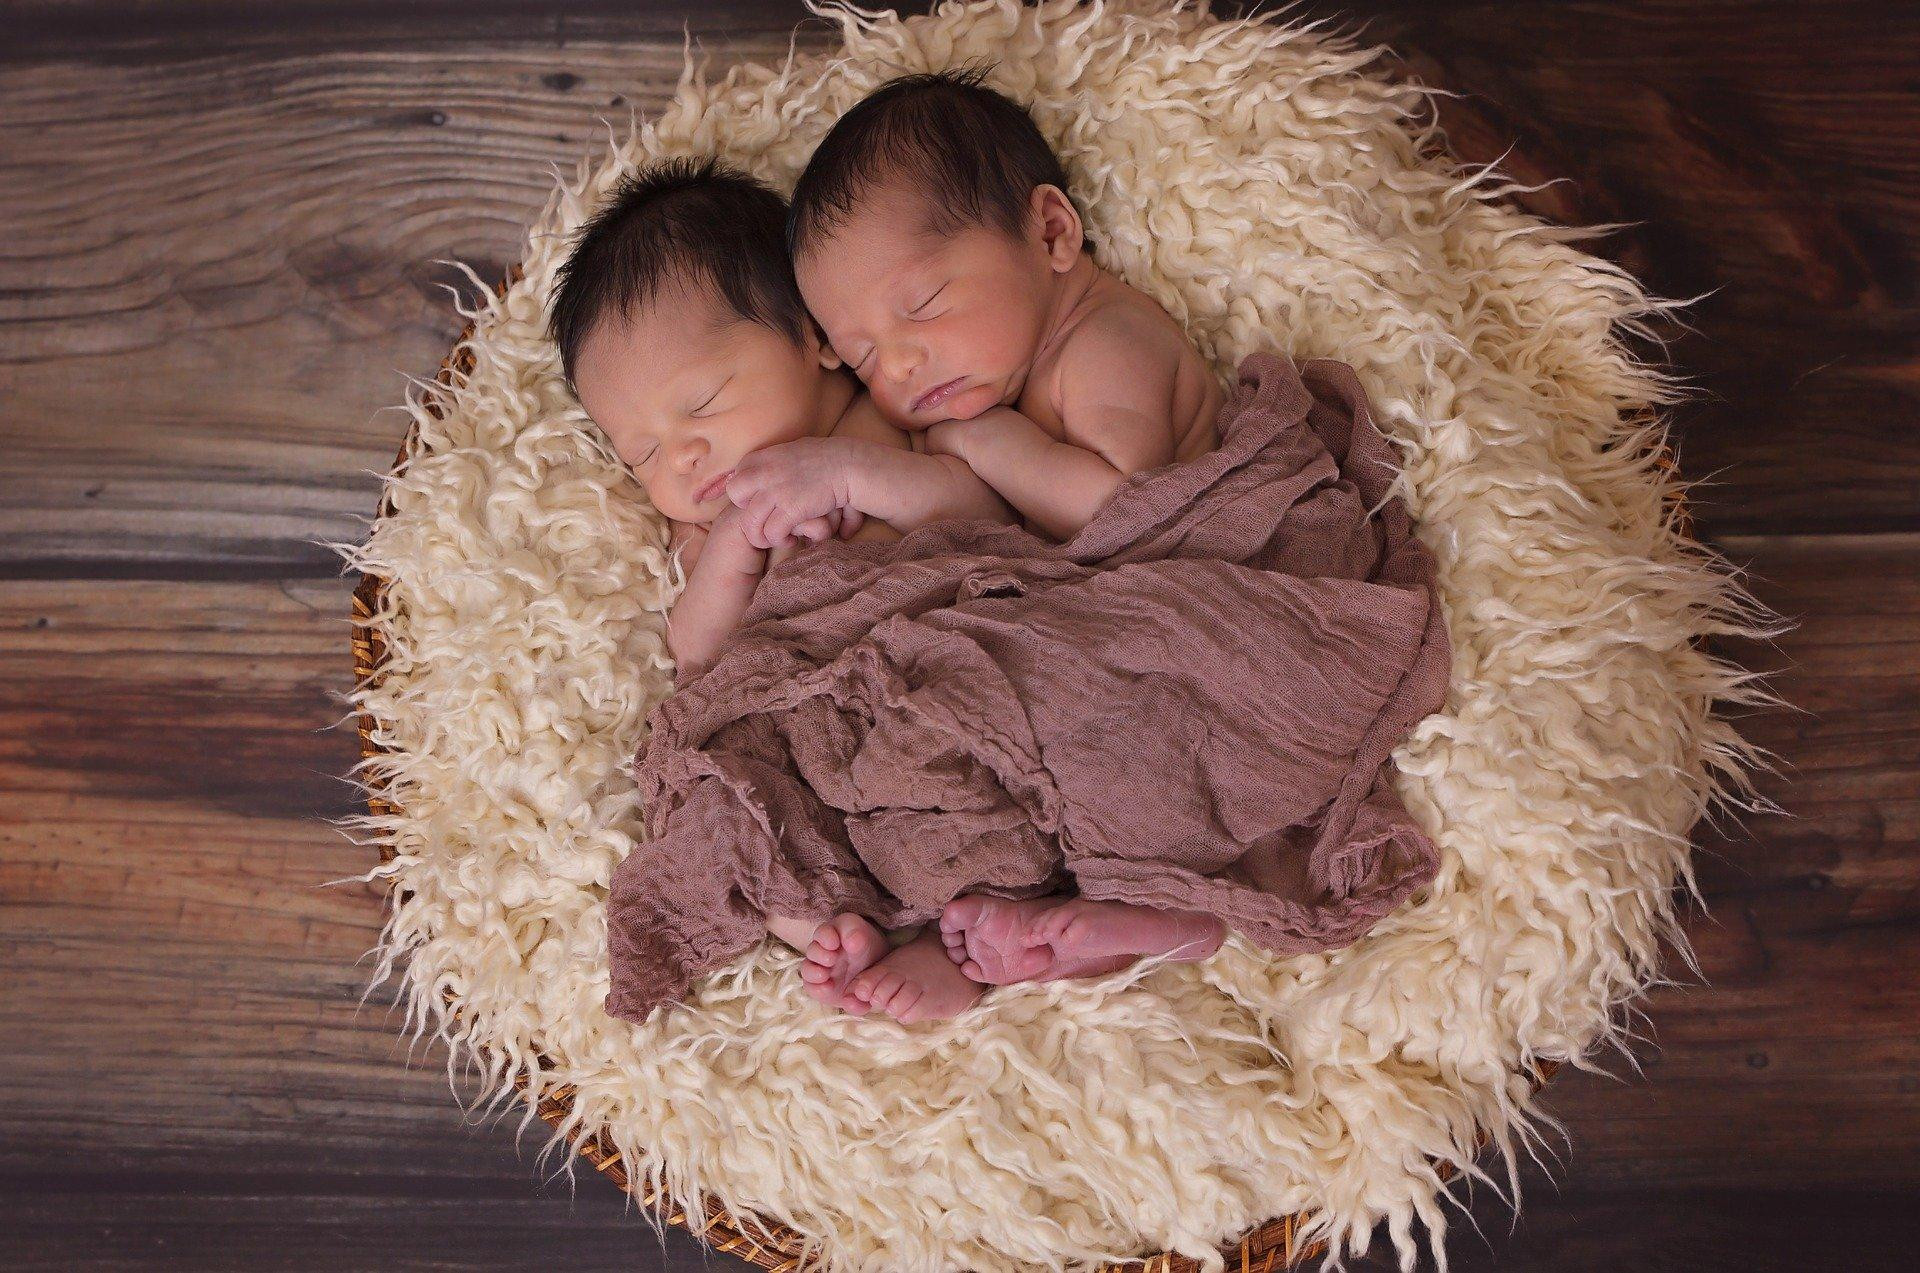 Dos gemelos posan abrazados el uno al otro mientras duermen / CG